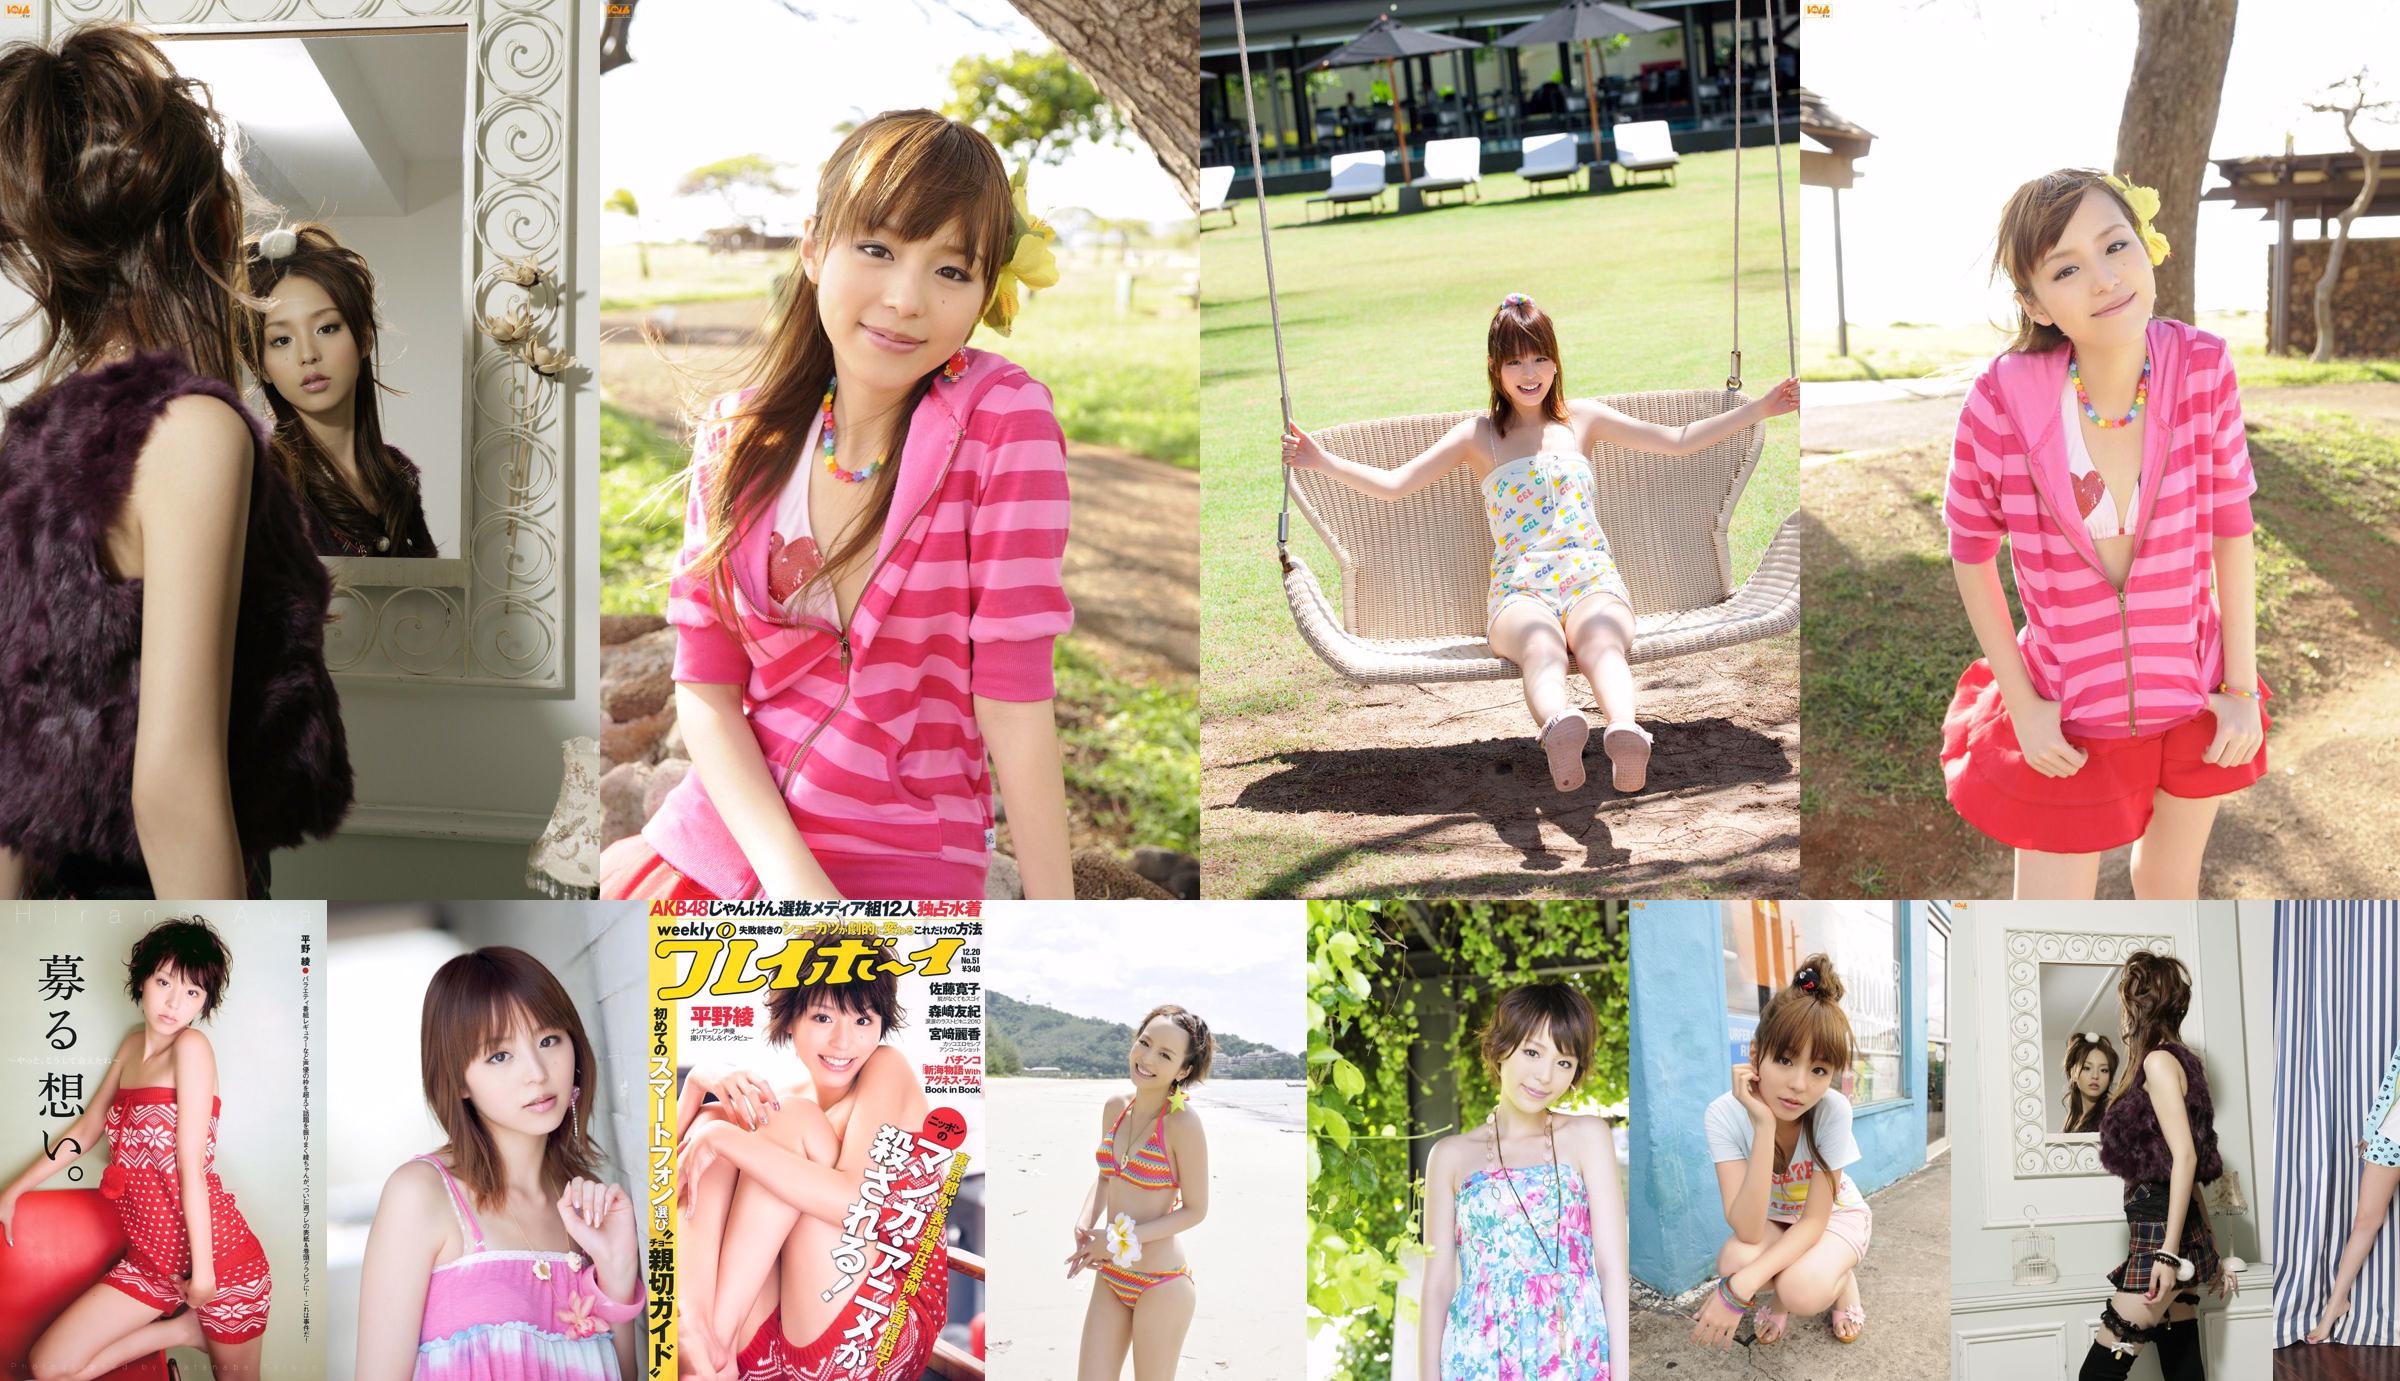 Aya Hirano AKB48 Hiroko Sato Mai Nishida Yuki Morisaki Agnes Lum [Weekly Playboy] 2010 No.51 Photo Magazine No.234fa5 Page 1